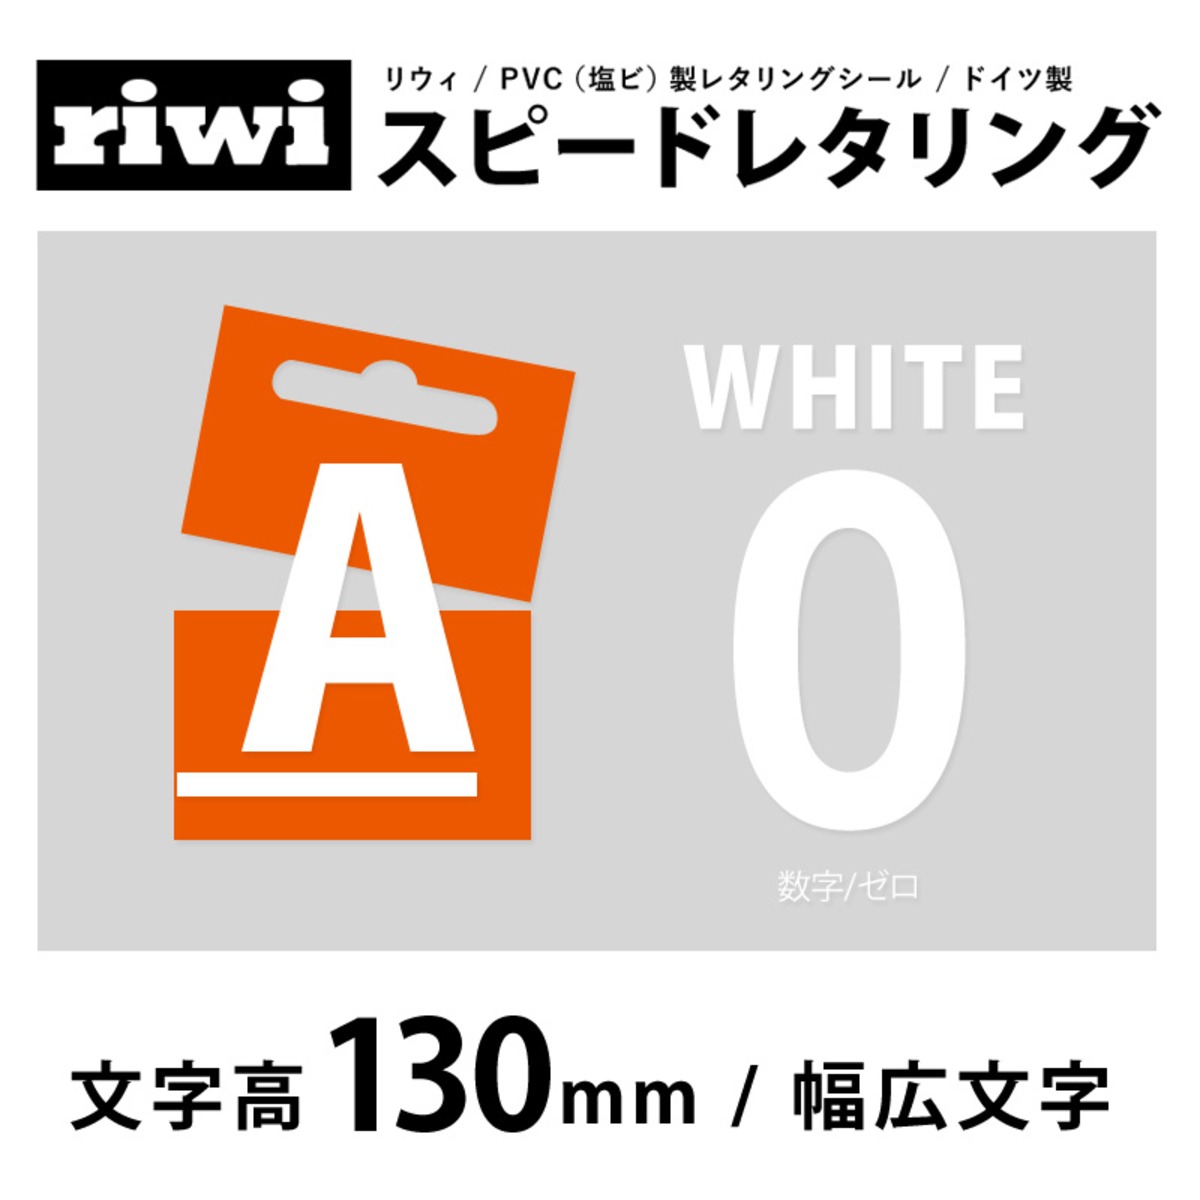 切文字 レタリングシール 130mm 幅広 白 数字0 Riwi リウィ Outlet画材店